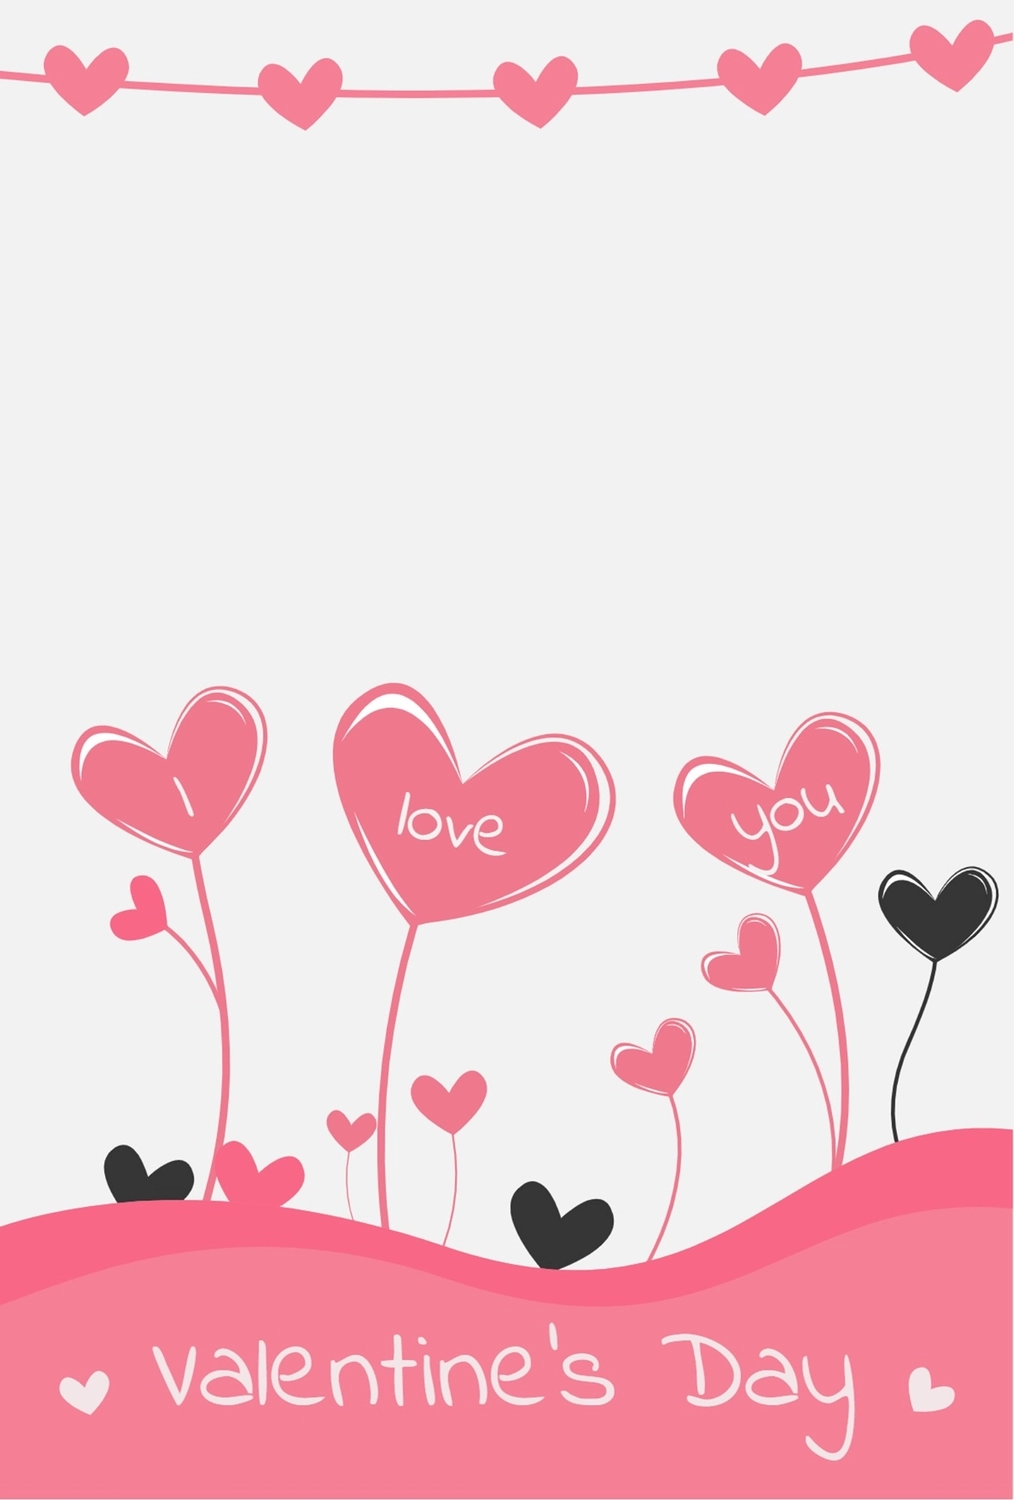 バレンタインデーグリーティングカード　ハートの花, ハート, 作成, デザイン, グリーティングカードテンプレート